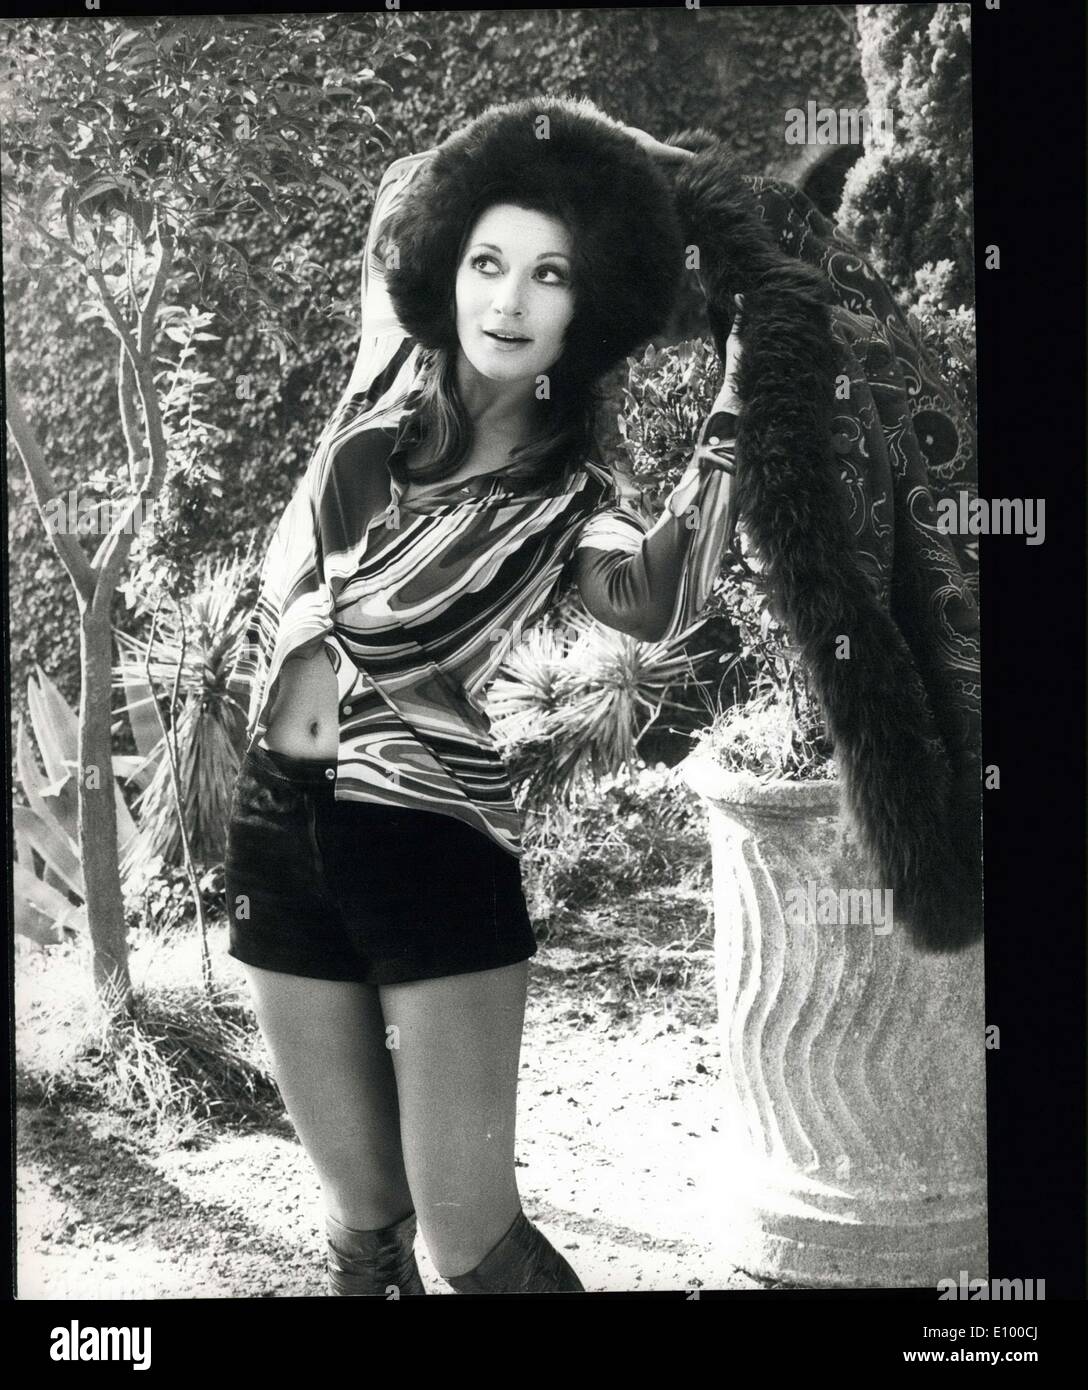 12 janvier 1972 - Charming brunette Rosalba Neri n'est pas cru à la rumeur populaire qui dit que les années bissextile sont malchanceux. En fait, elle vient de terminer un film et elle a immédiatement signé le contrat pour un nouveau film. Photo montre : Charmant Rosalba Neri Banque D'Images